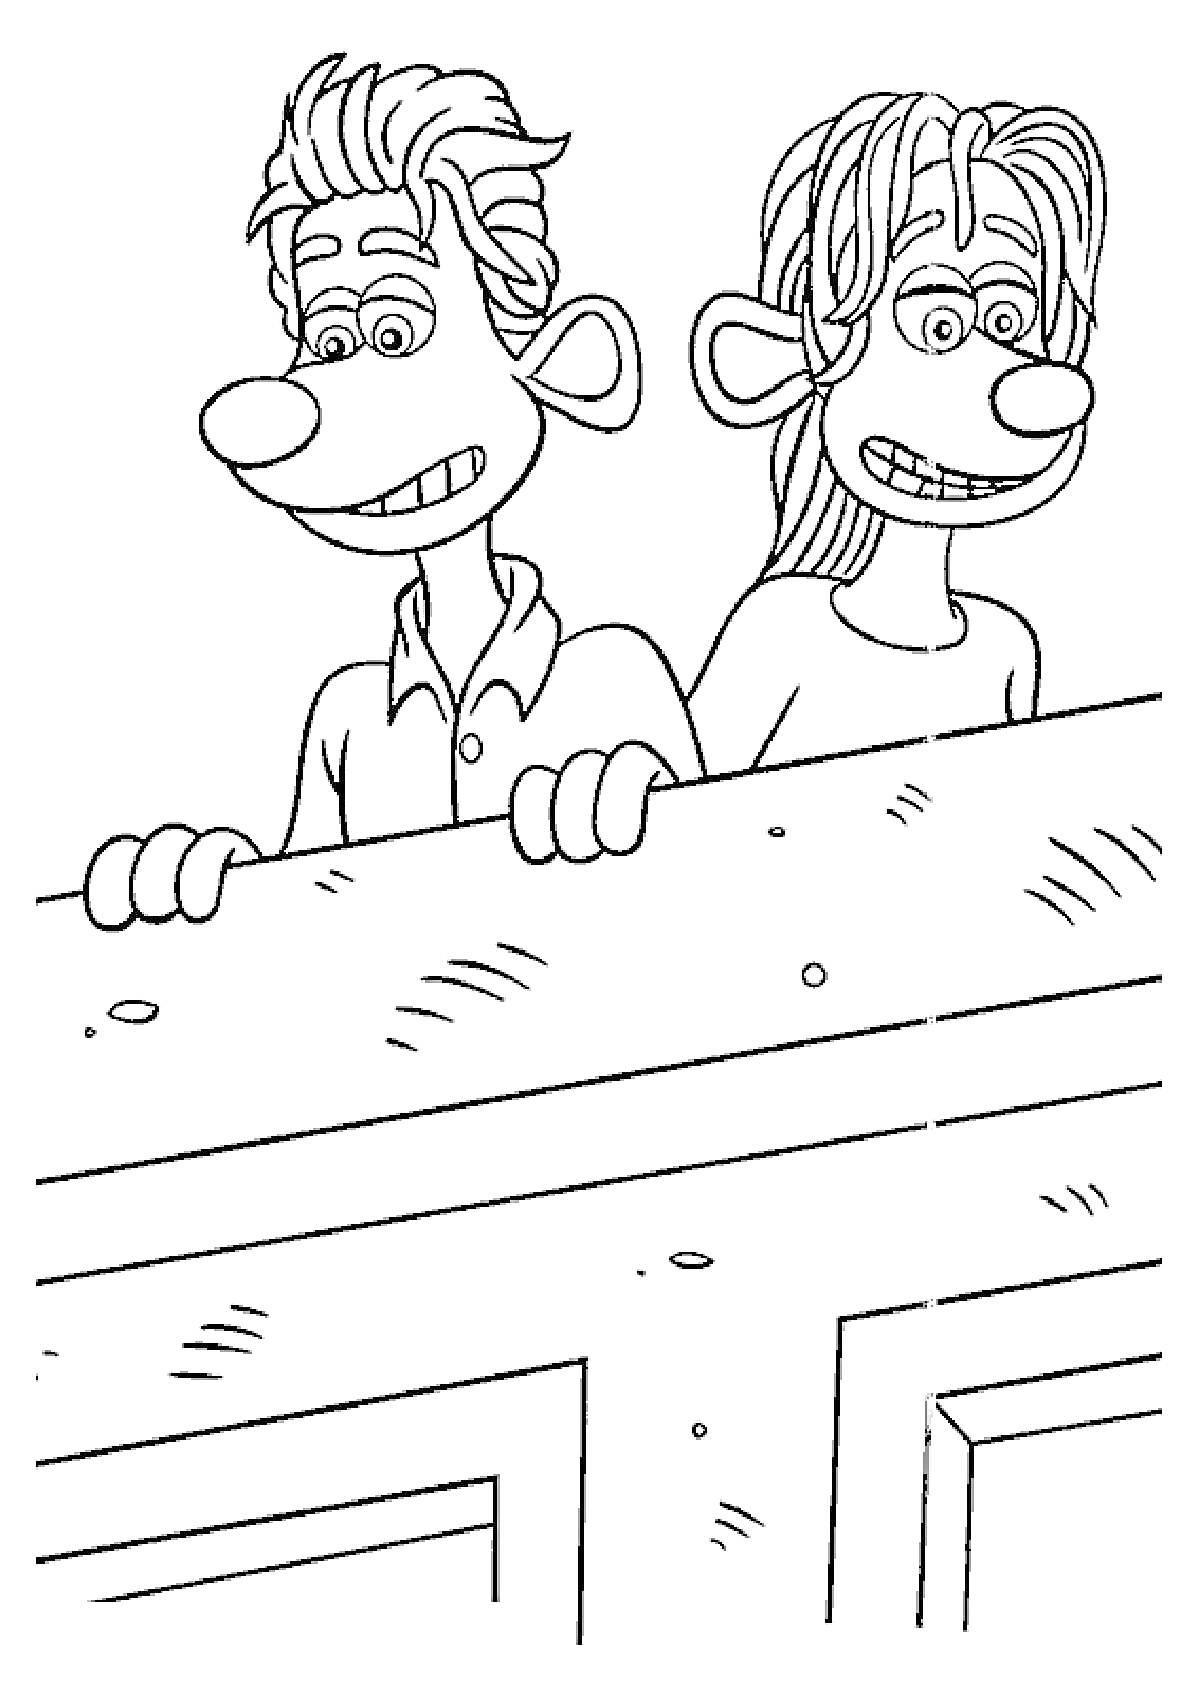 Раскраска Два персонажа с большими ушами и носами за деревянным забором